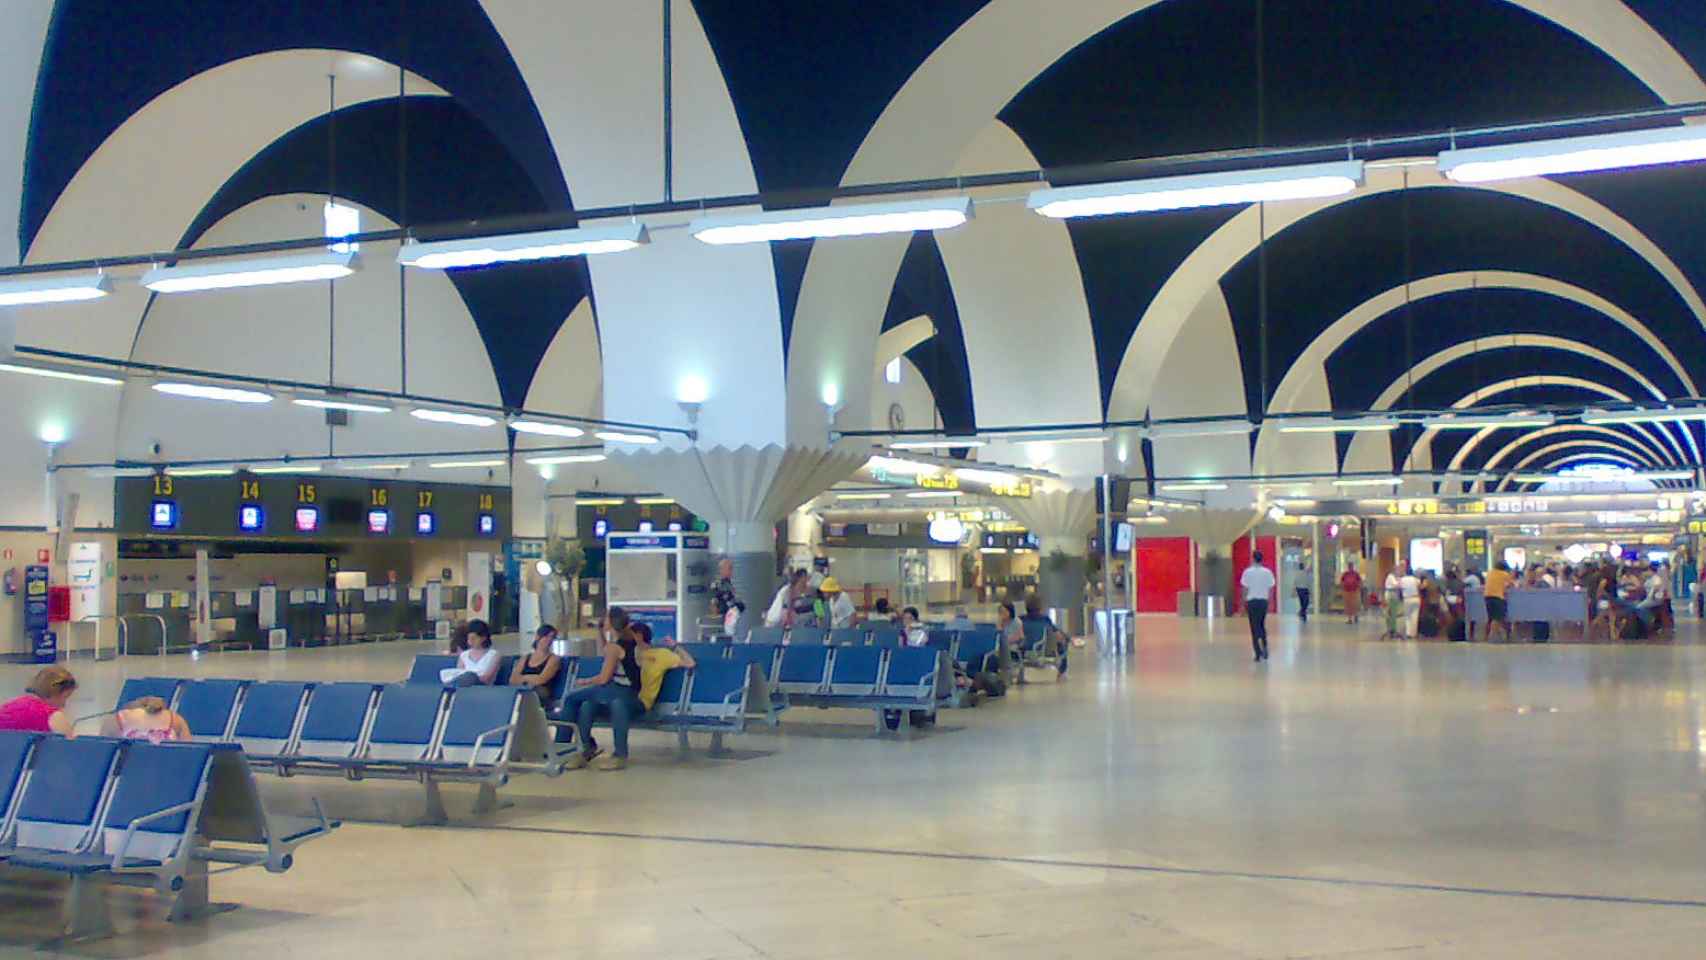 Terminal del Aeropuerto Sevilla - San Pablo.